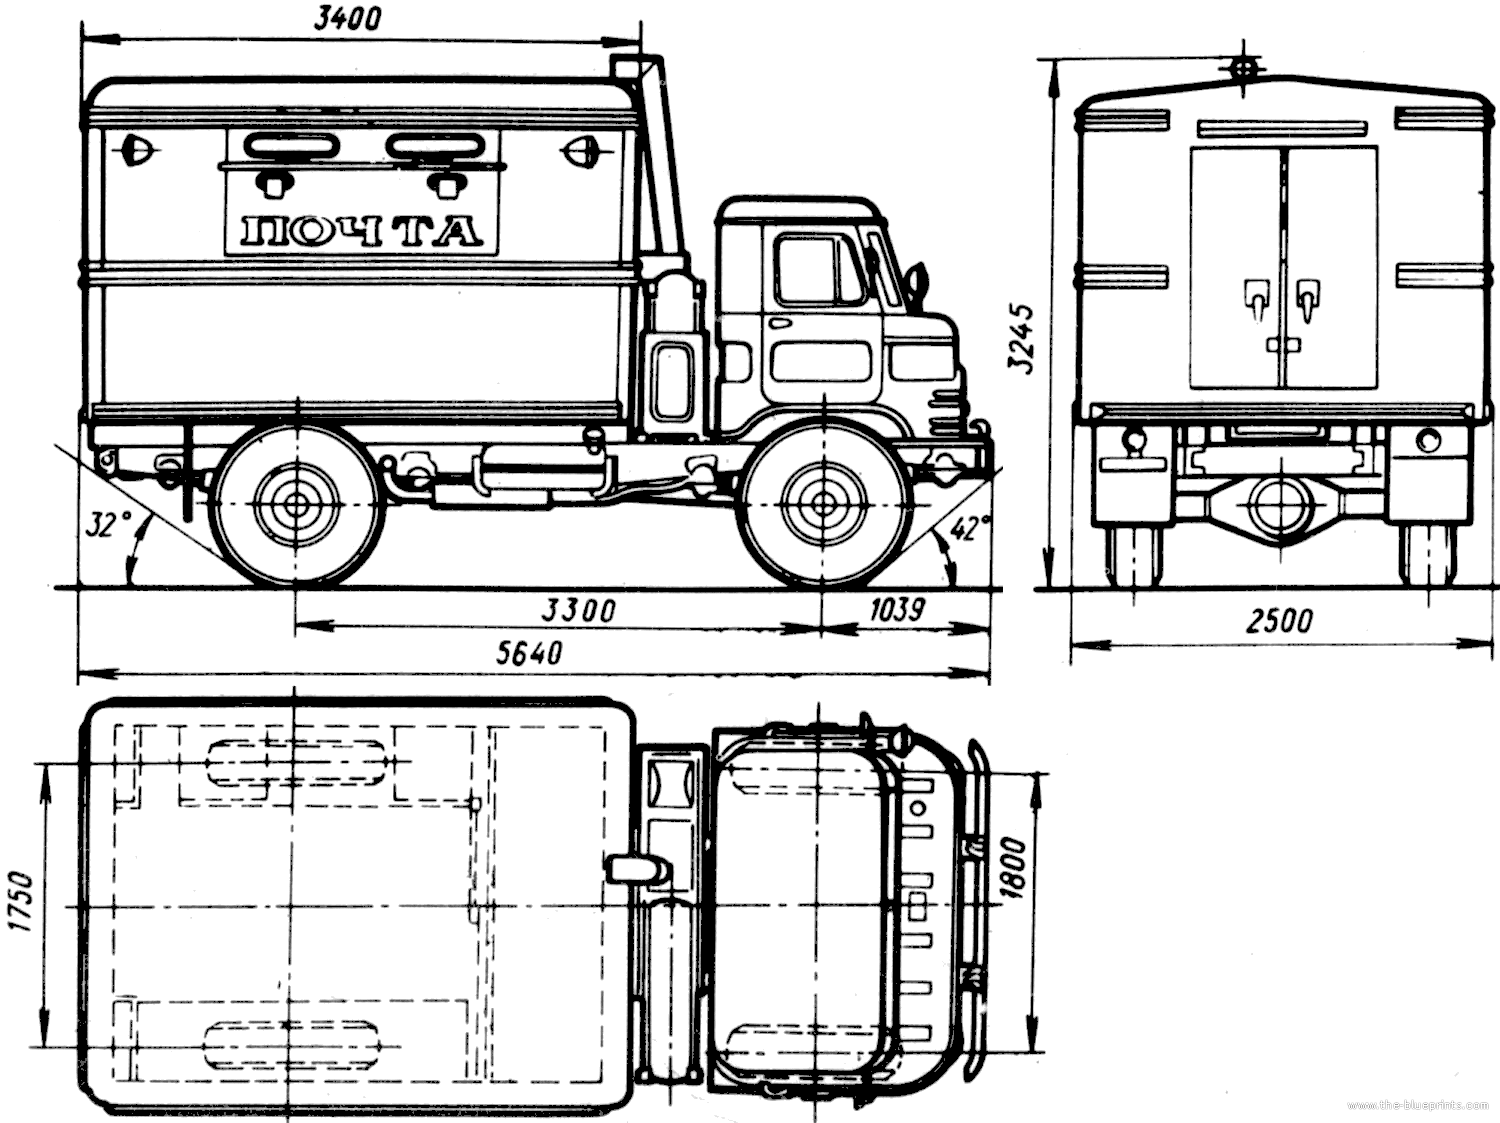 The-Blueprints.com - Blueprints > Trucks > GAZ > GAZ-66-01 GZSA-